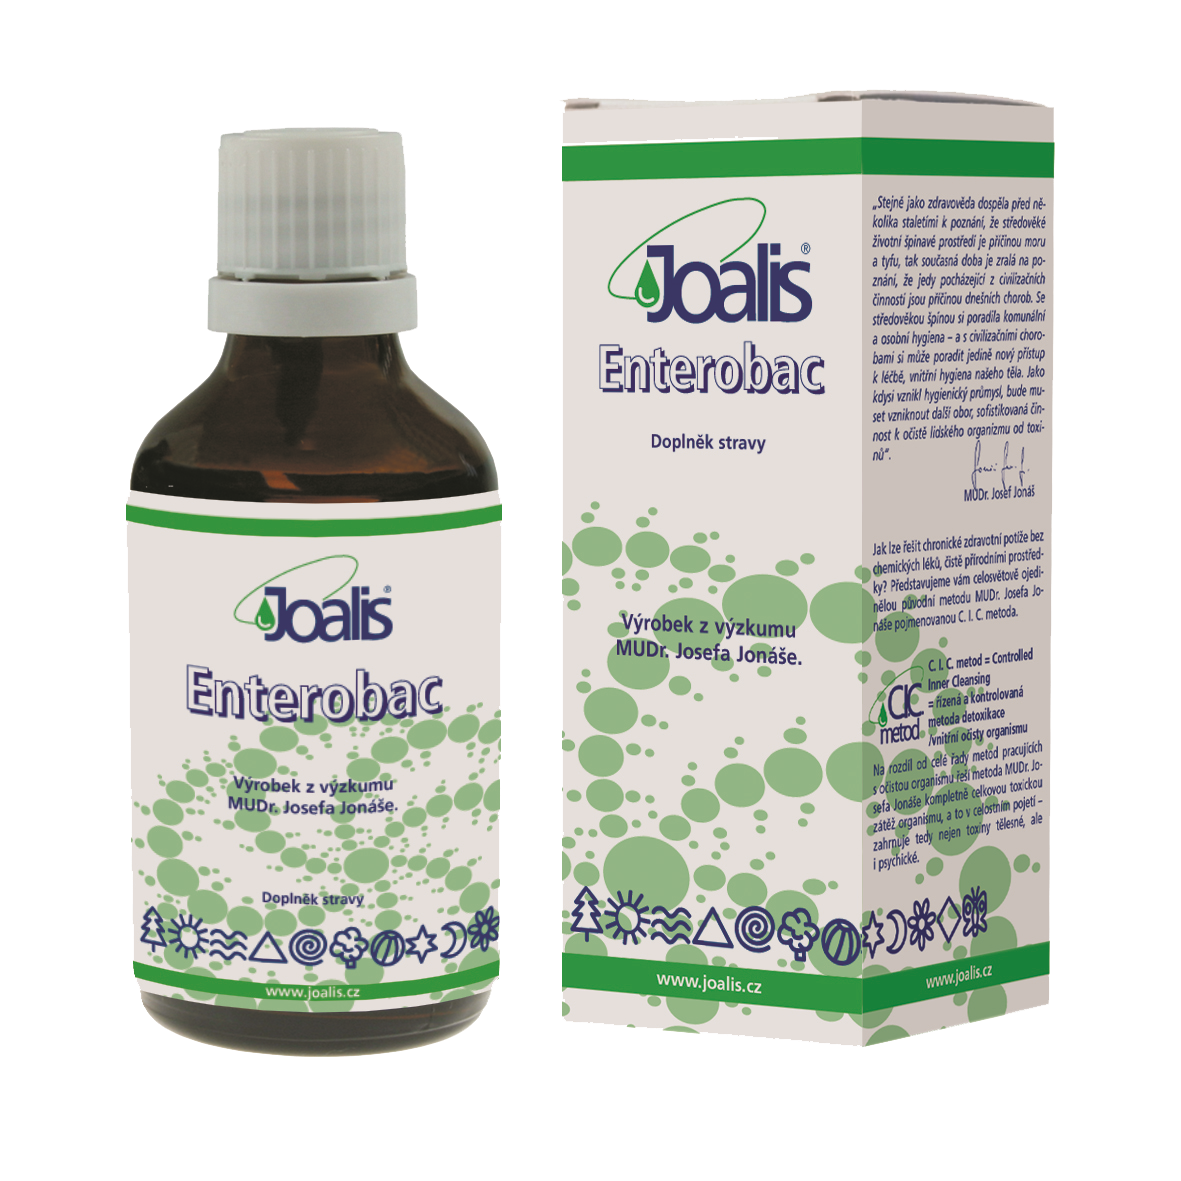 Joalis Enterobac (enterobakterie)